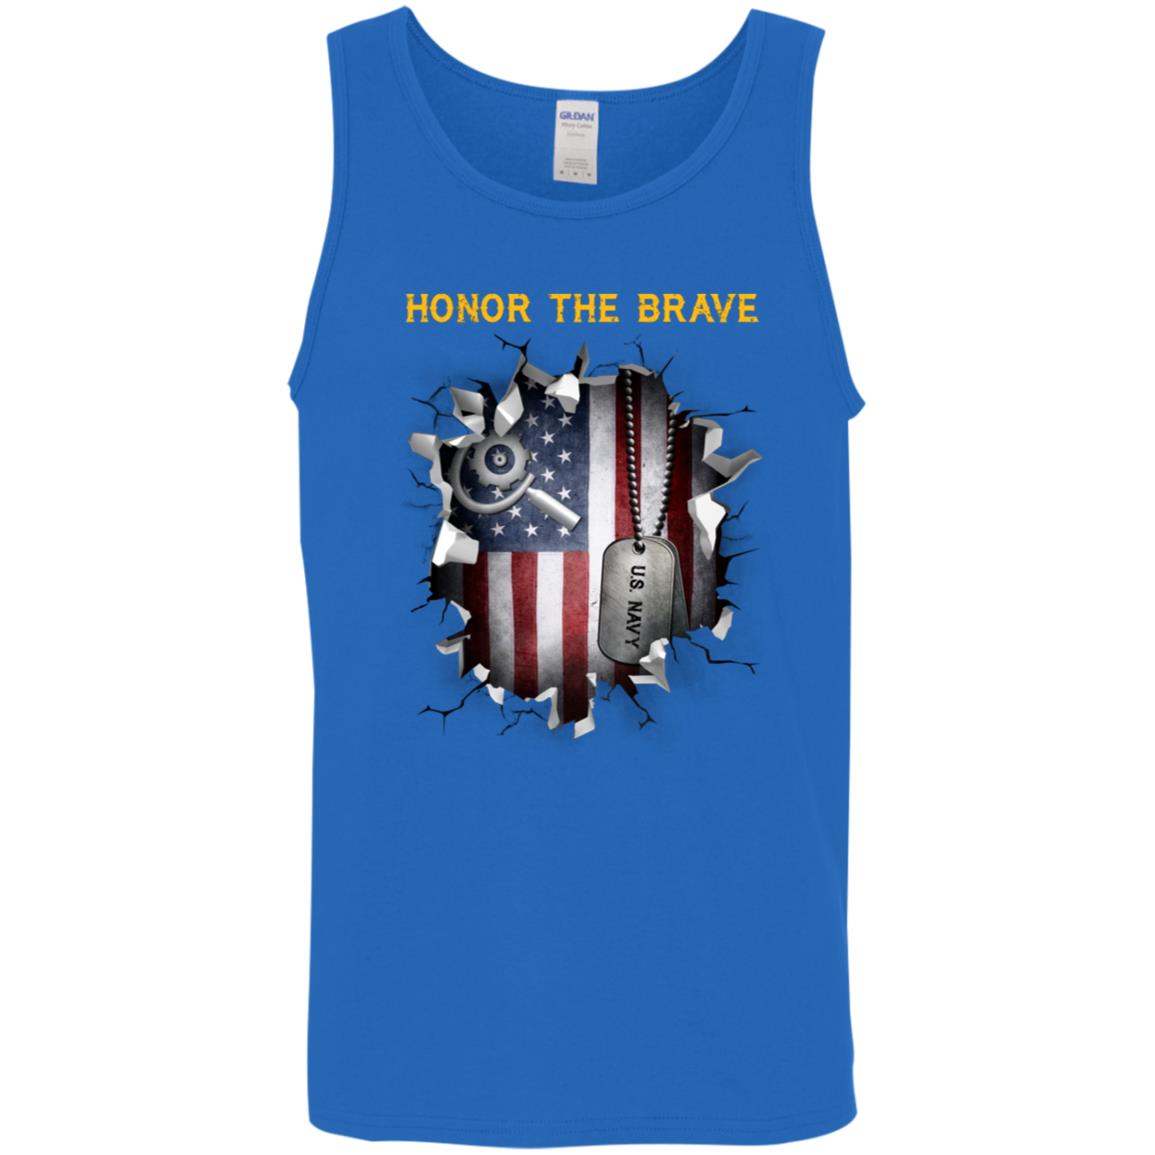 U.S Navy Machinery repairman Navy MR - Honor The Brave Front Shirt